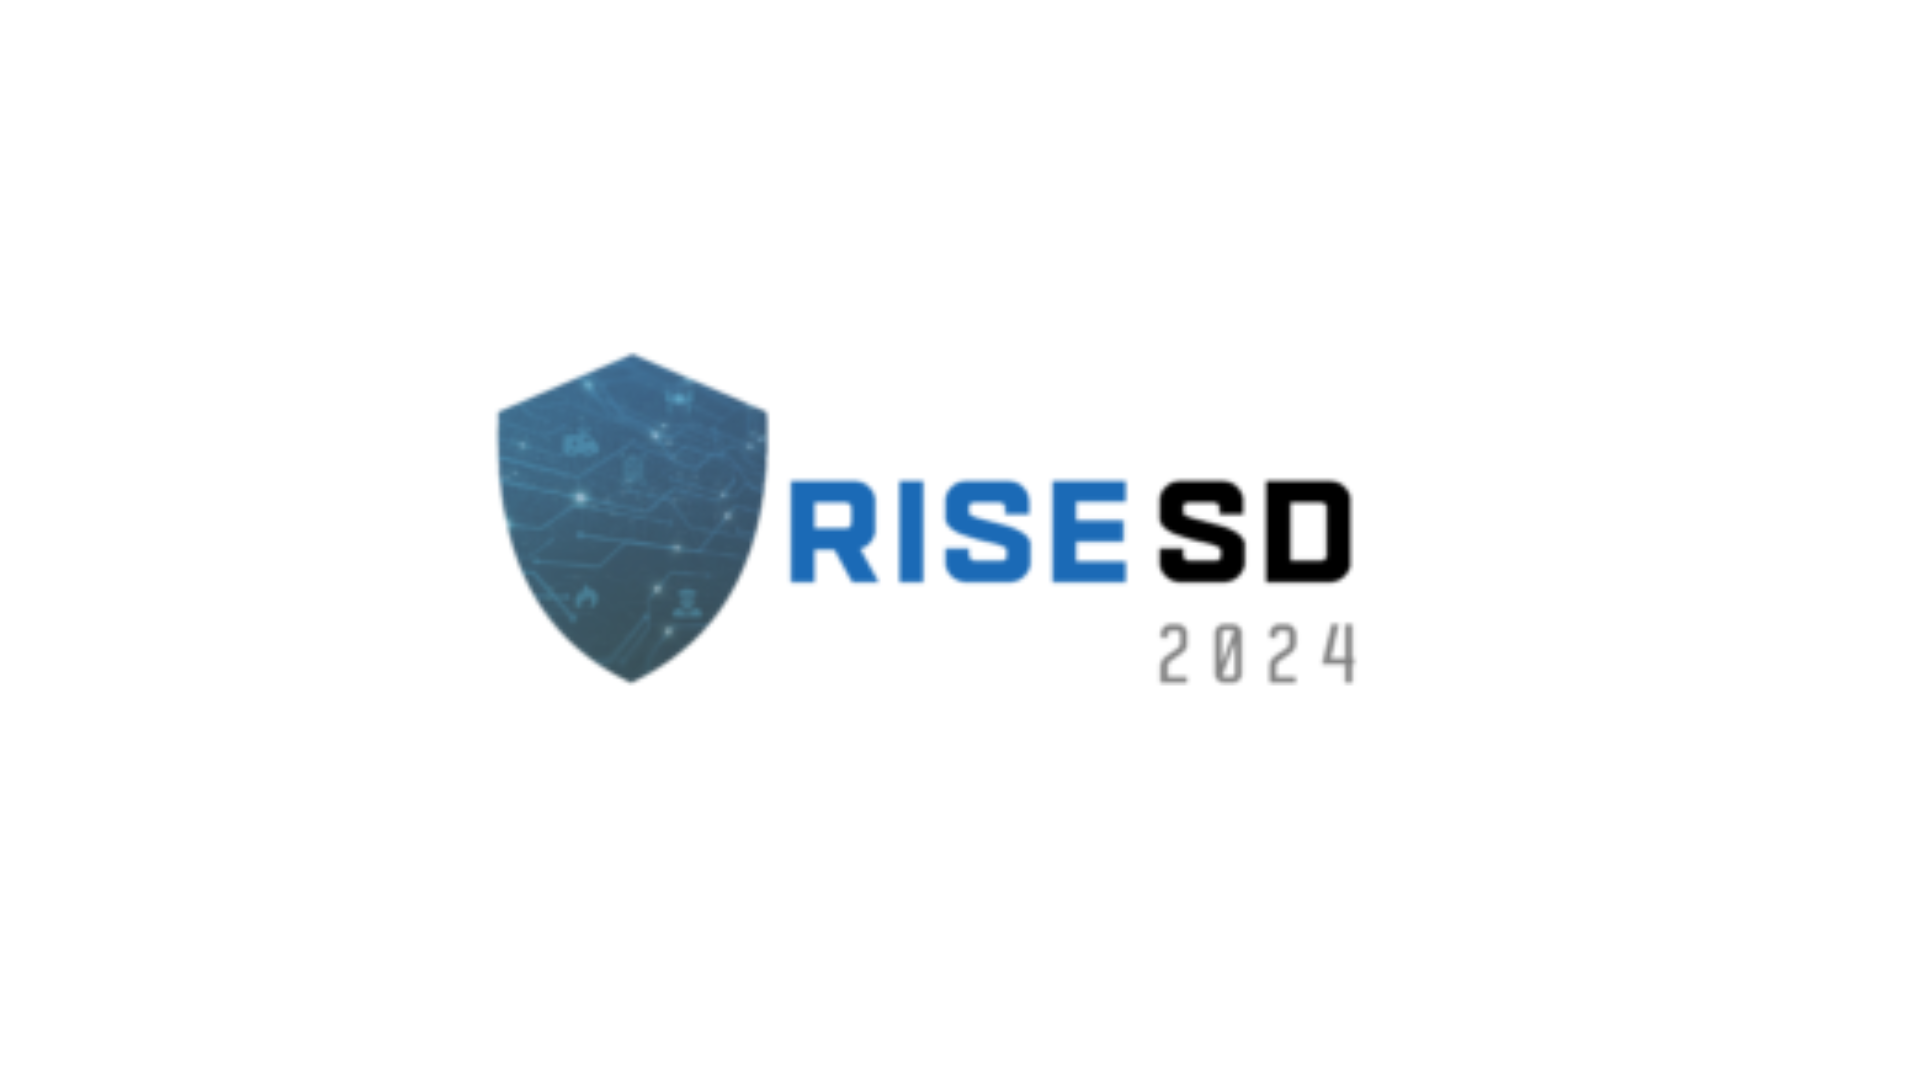 RISE-SD